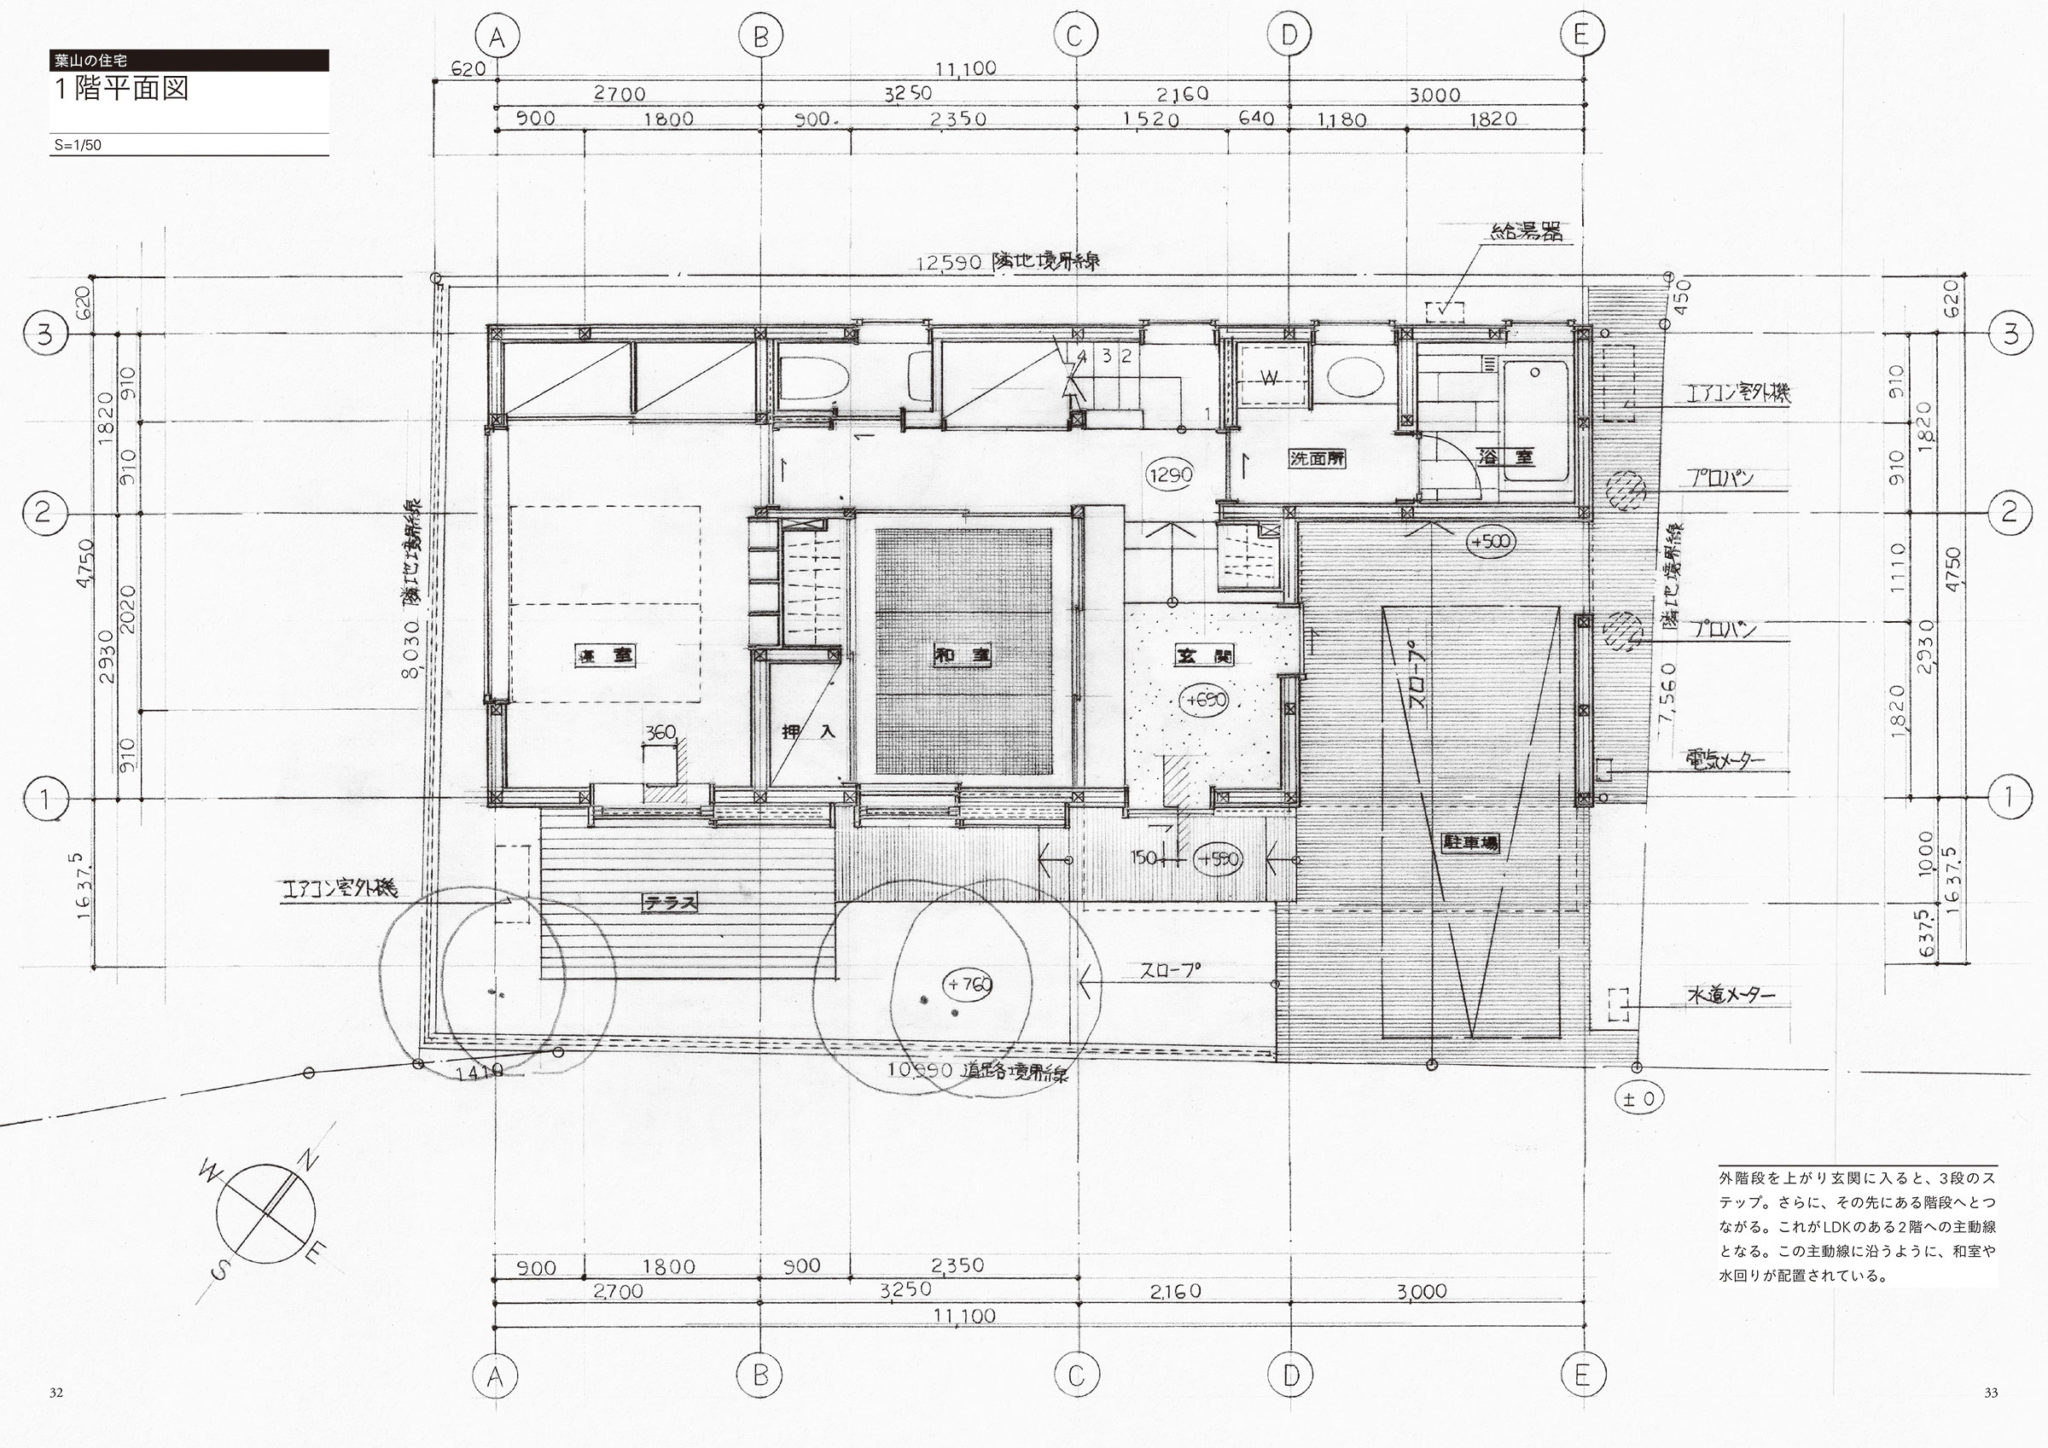 住宅の名手として知られる佐藤重徳が 寸法の決め方 納め方等の設計手法を図面とともに解説した書籍 若手設計者に贈る 木造住宅の手描き詳細図集 のプレビュー Architecturephoto Net